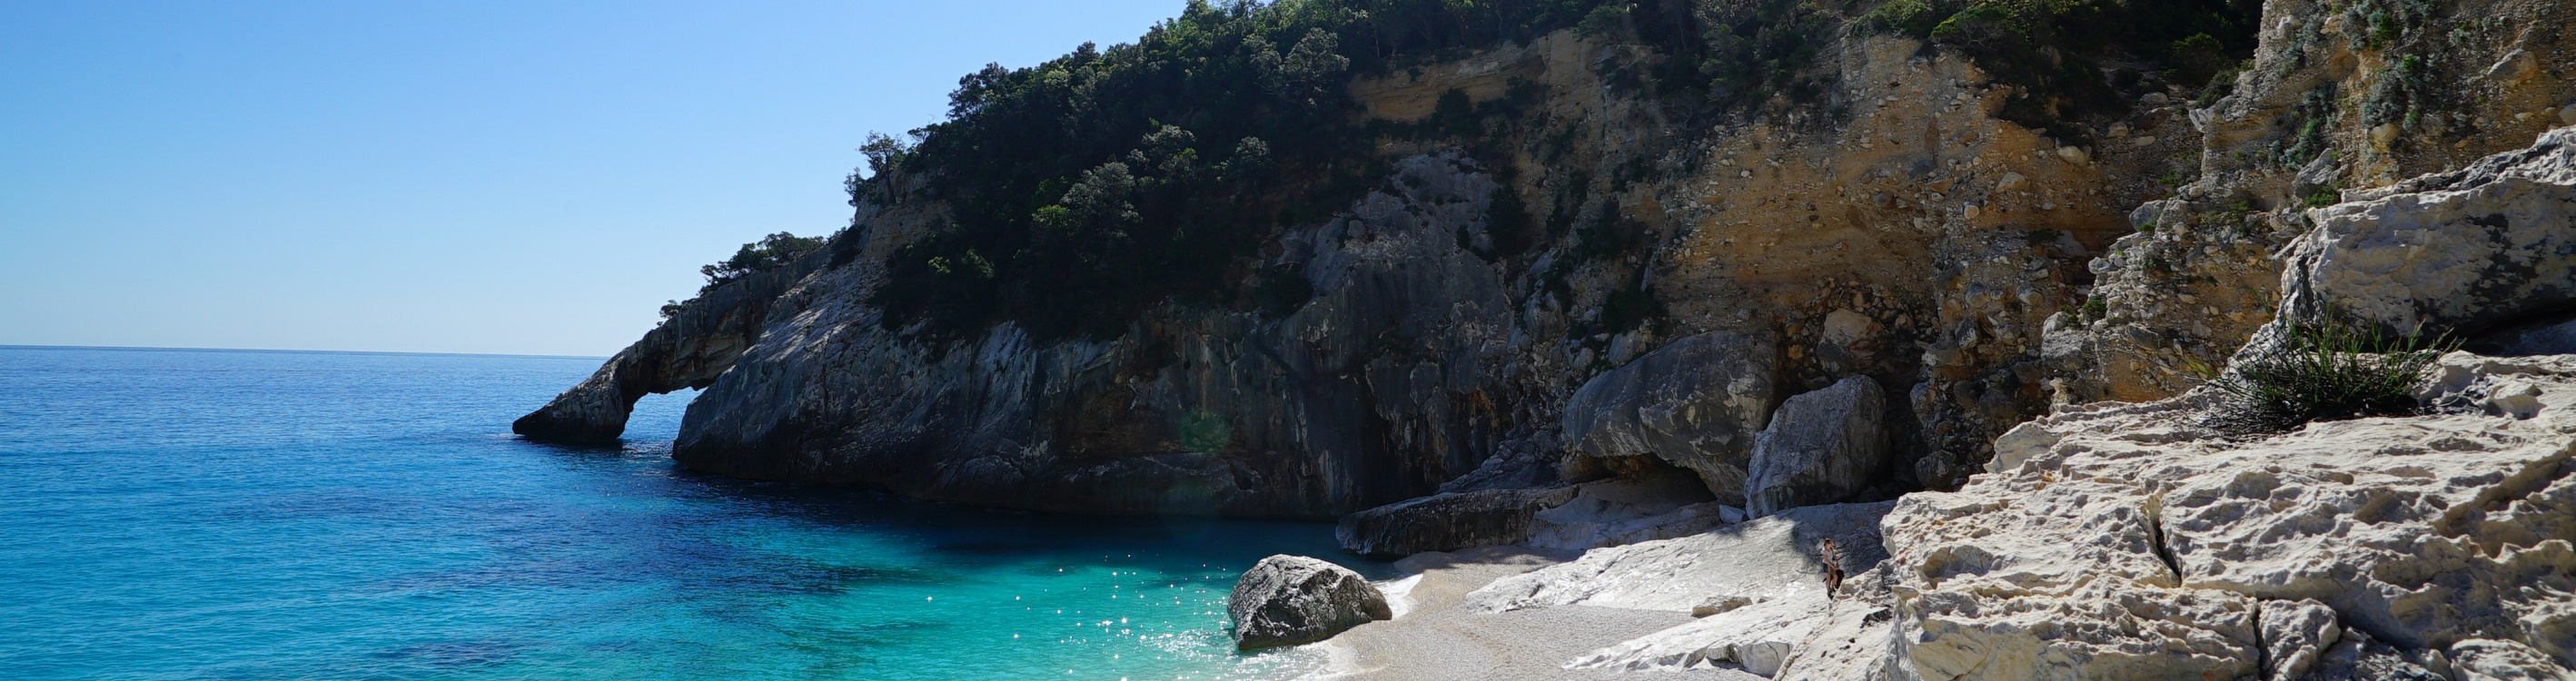 Der Blick auf das Felsentor bei Cala Goloritzè auf Sardinien.